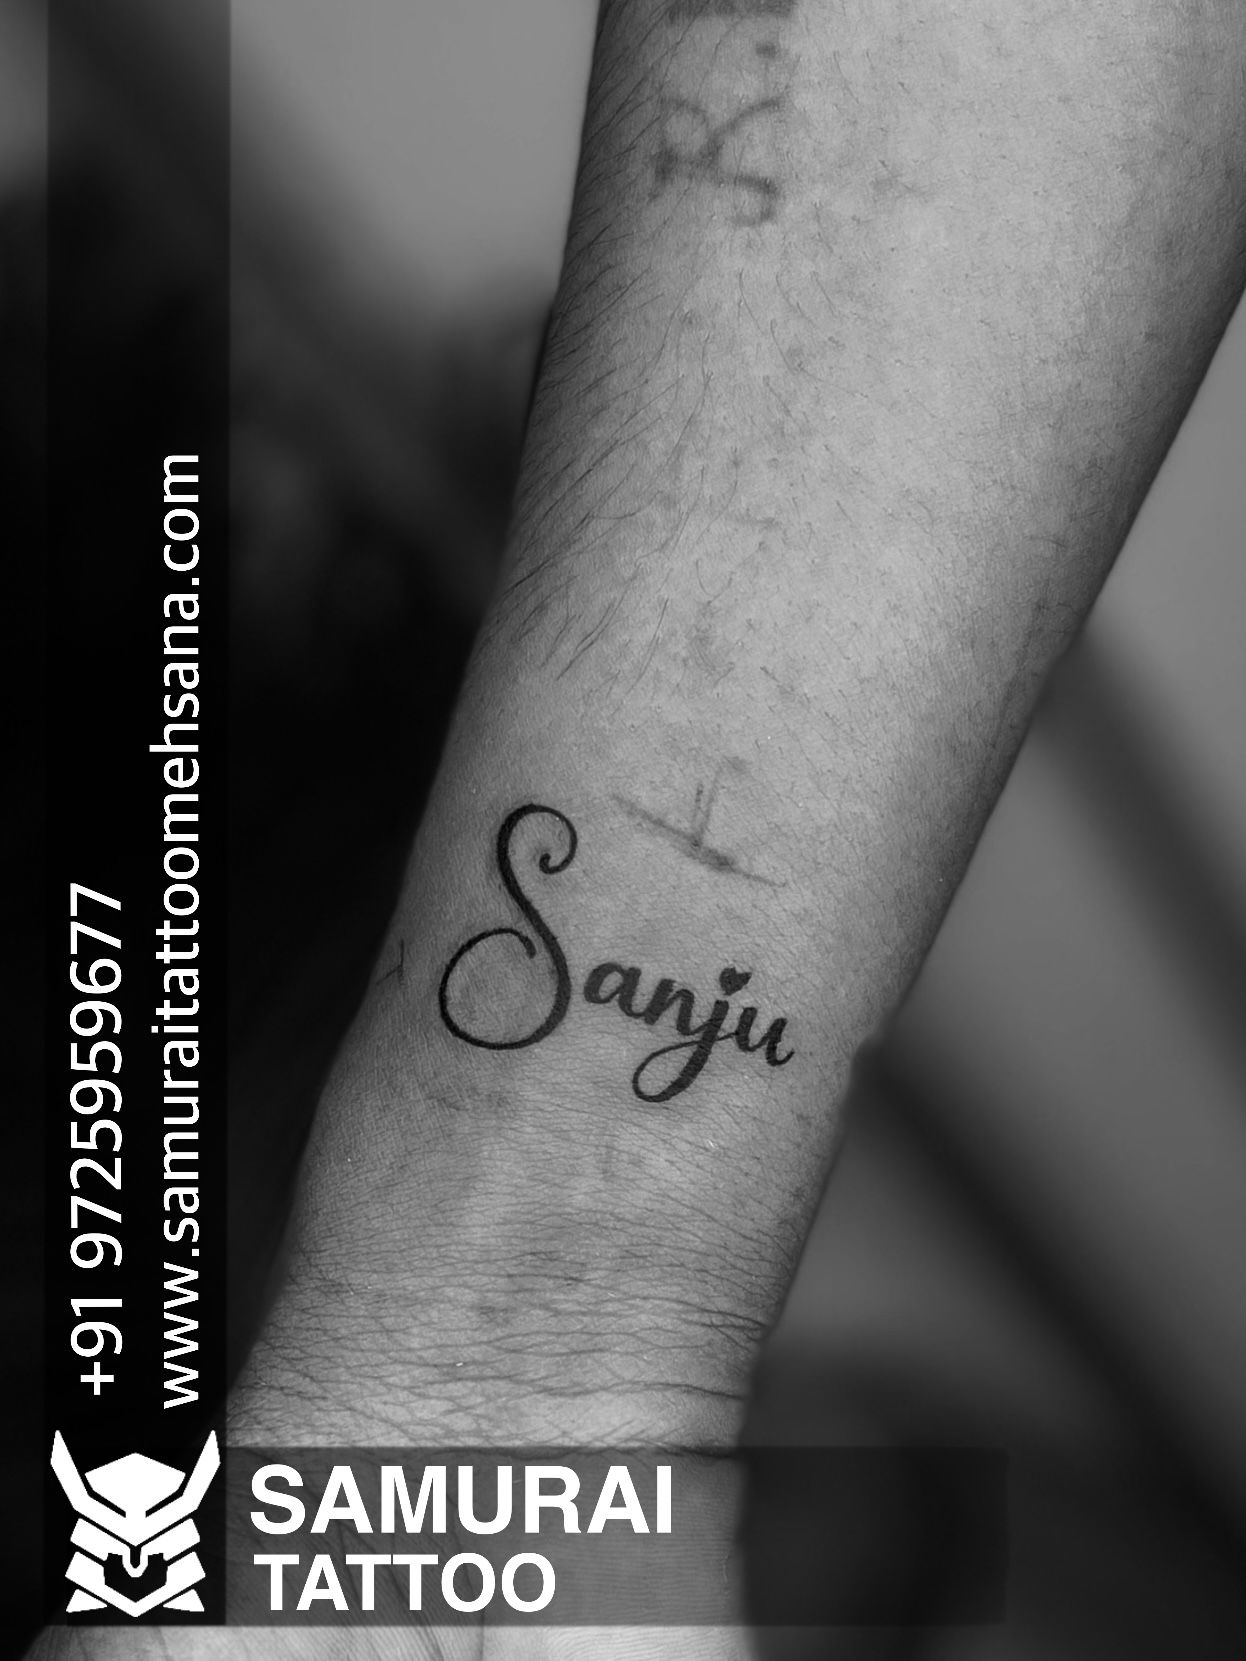 Sanju Inkz Tattoos - YouTube